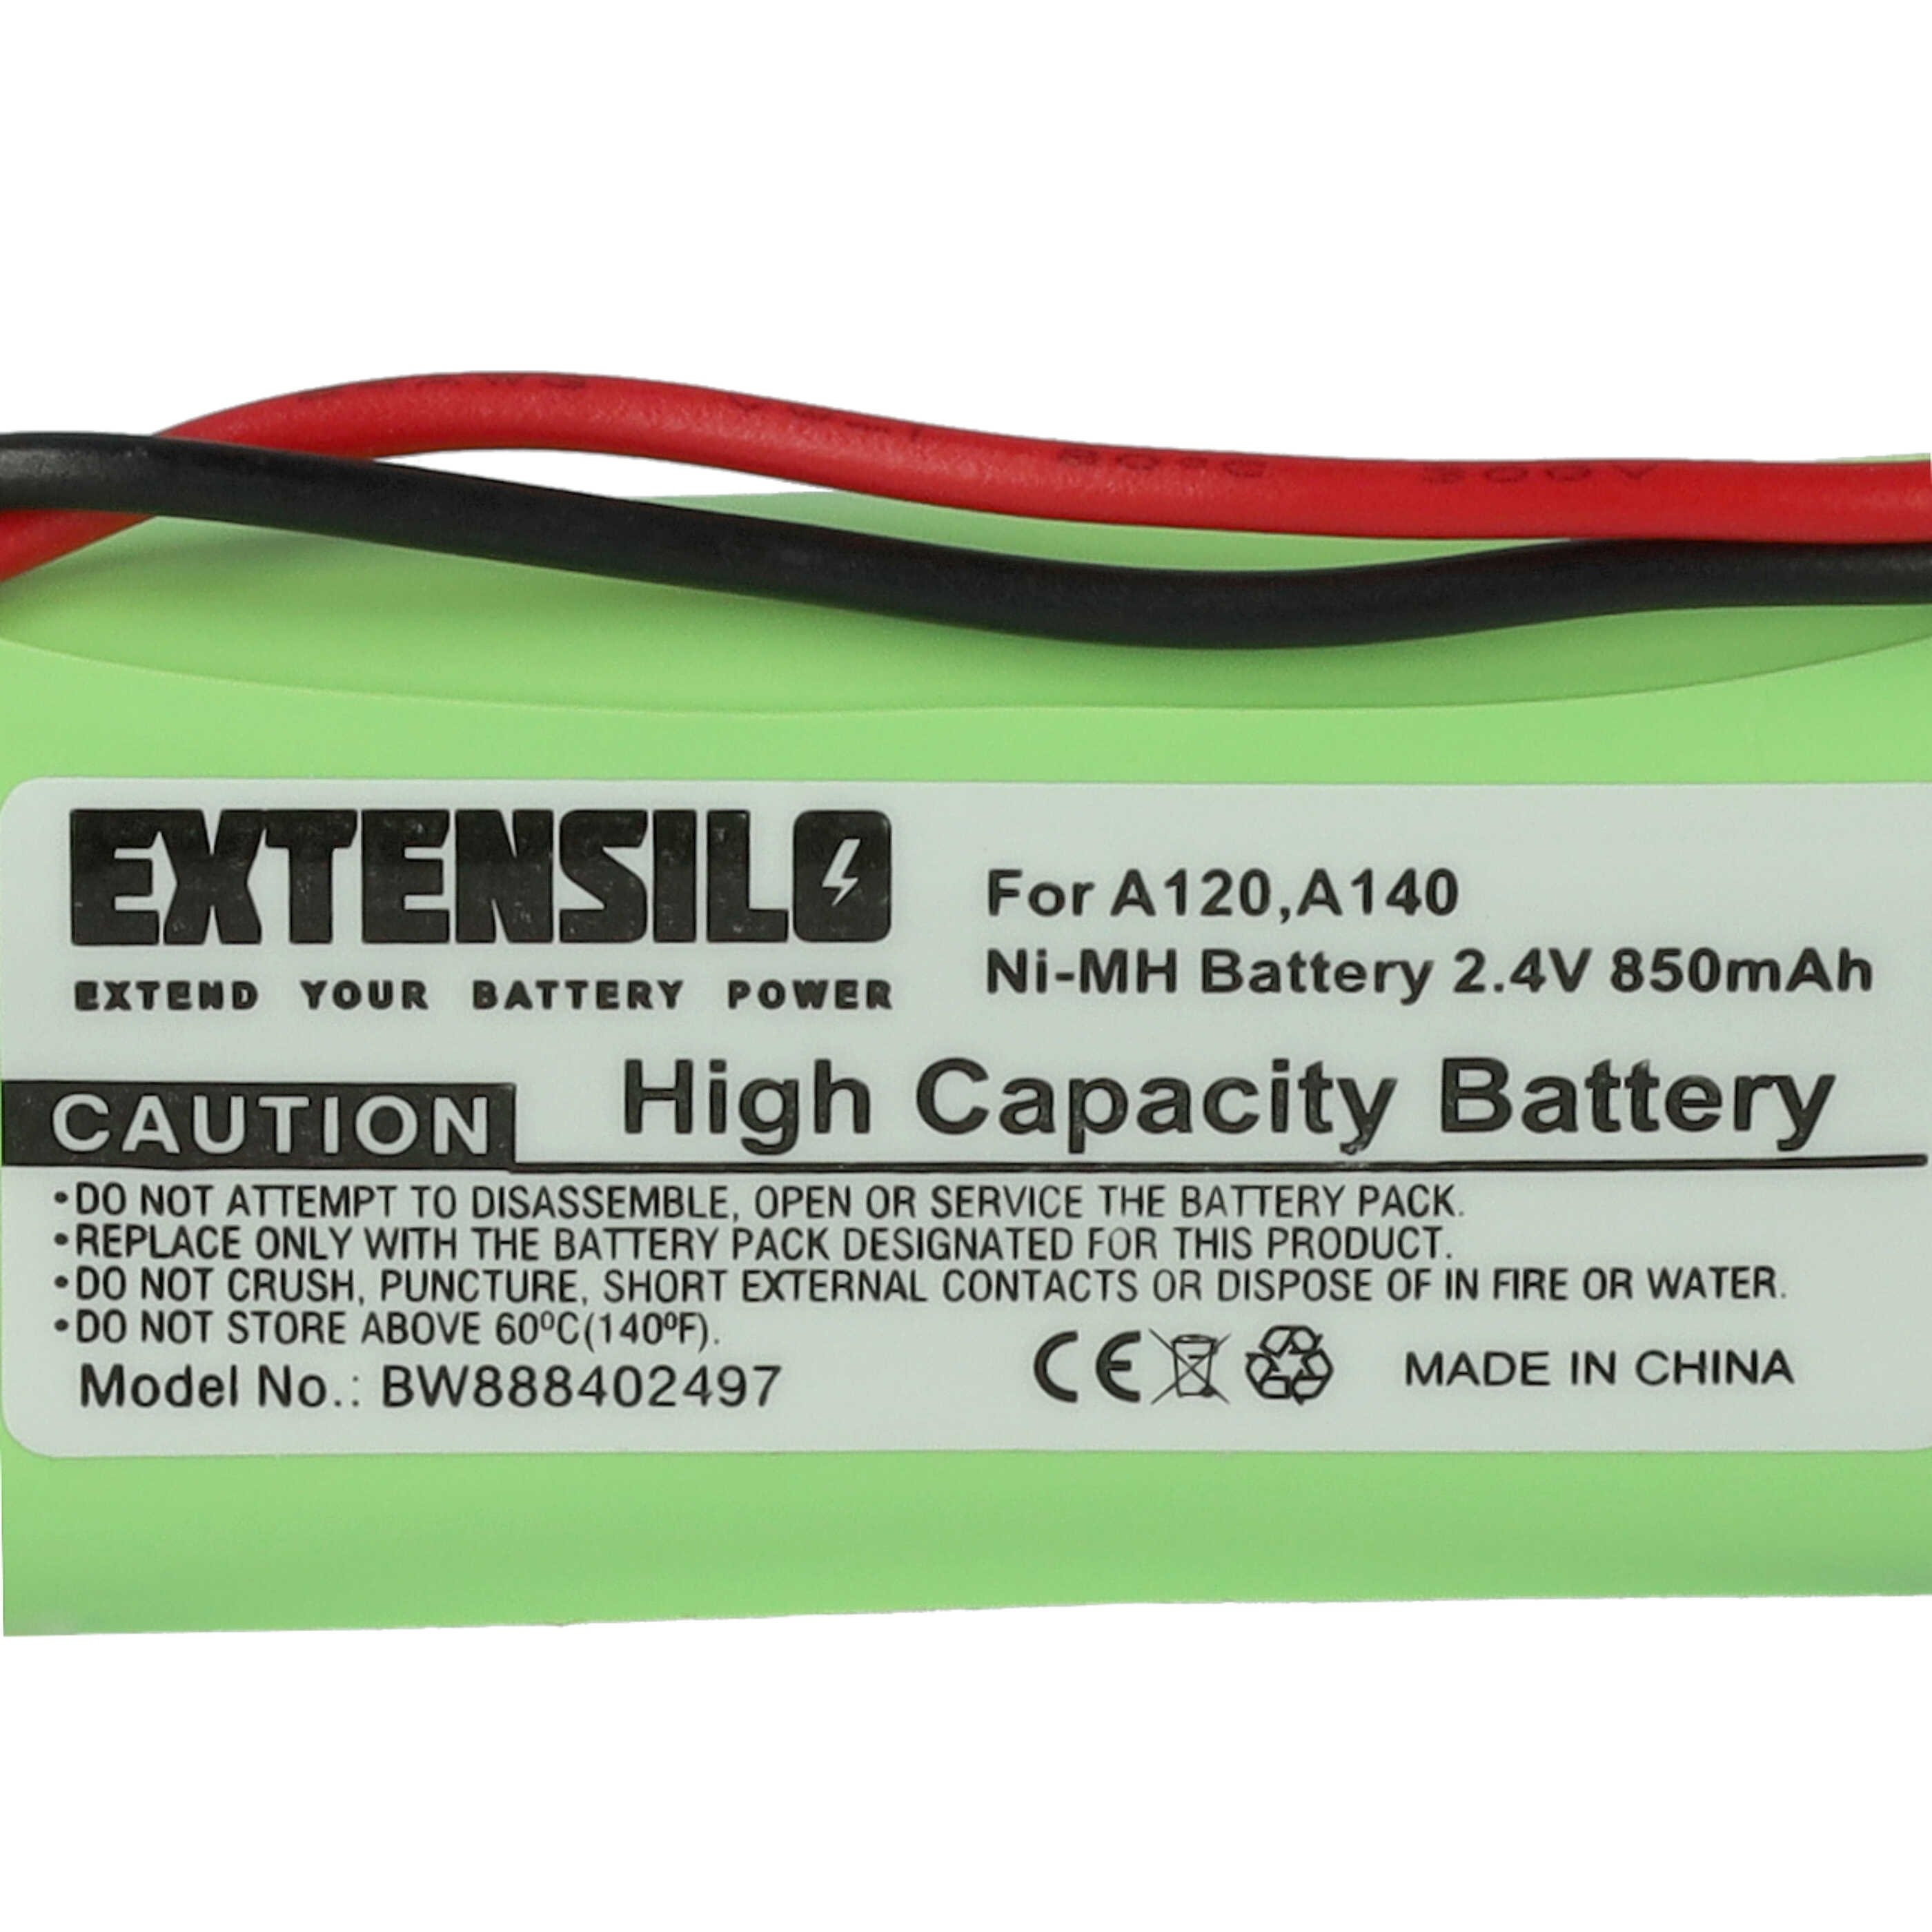 Batterie remplace 55AAAHR2BMX, C30852D1640X1, 220436C1, 41AAAH2BMX, 220382C1 pour téléphone - 850mAh 2,4V NiMH